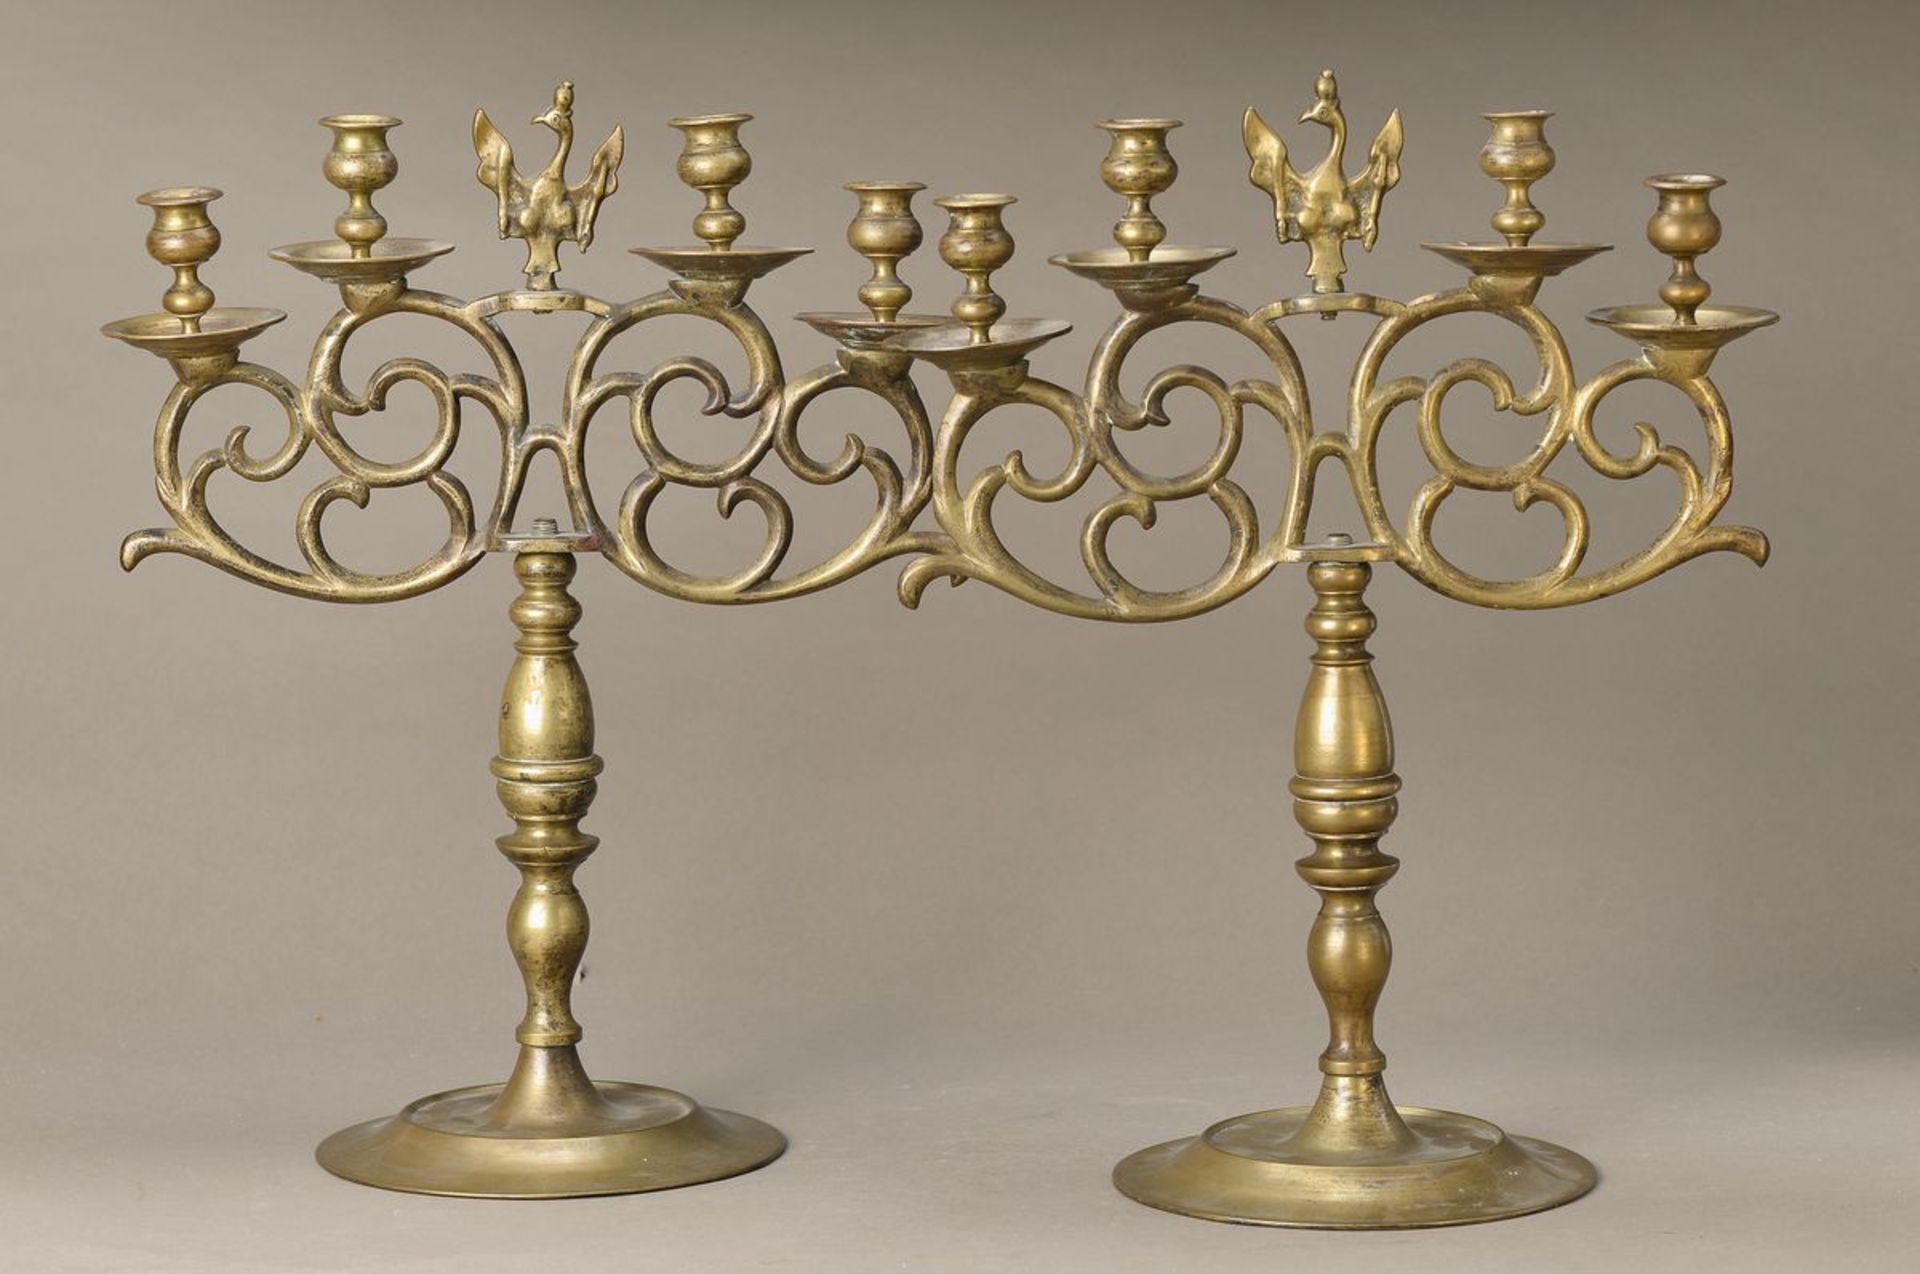 Paar Kerzenleuchter, Preussen, um 1760-70, Messing, vier Brennstellen auf Voluten, mittig